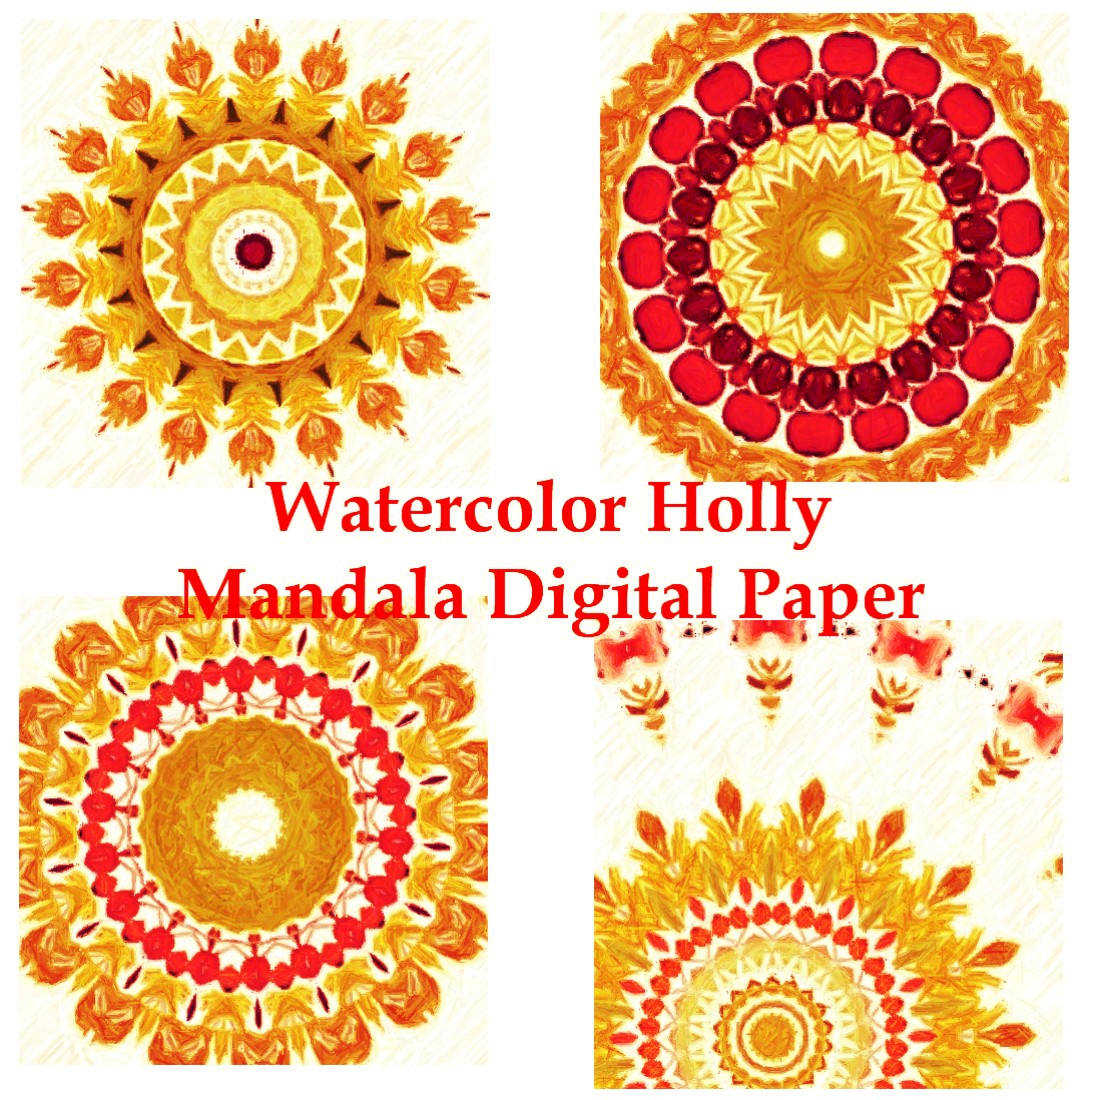 Watercolor Holly Mandala Digital Paper cover image.